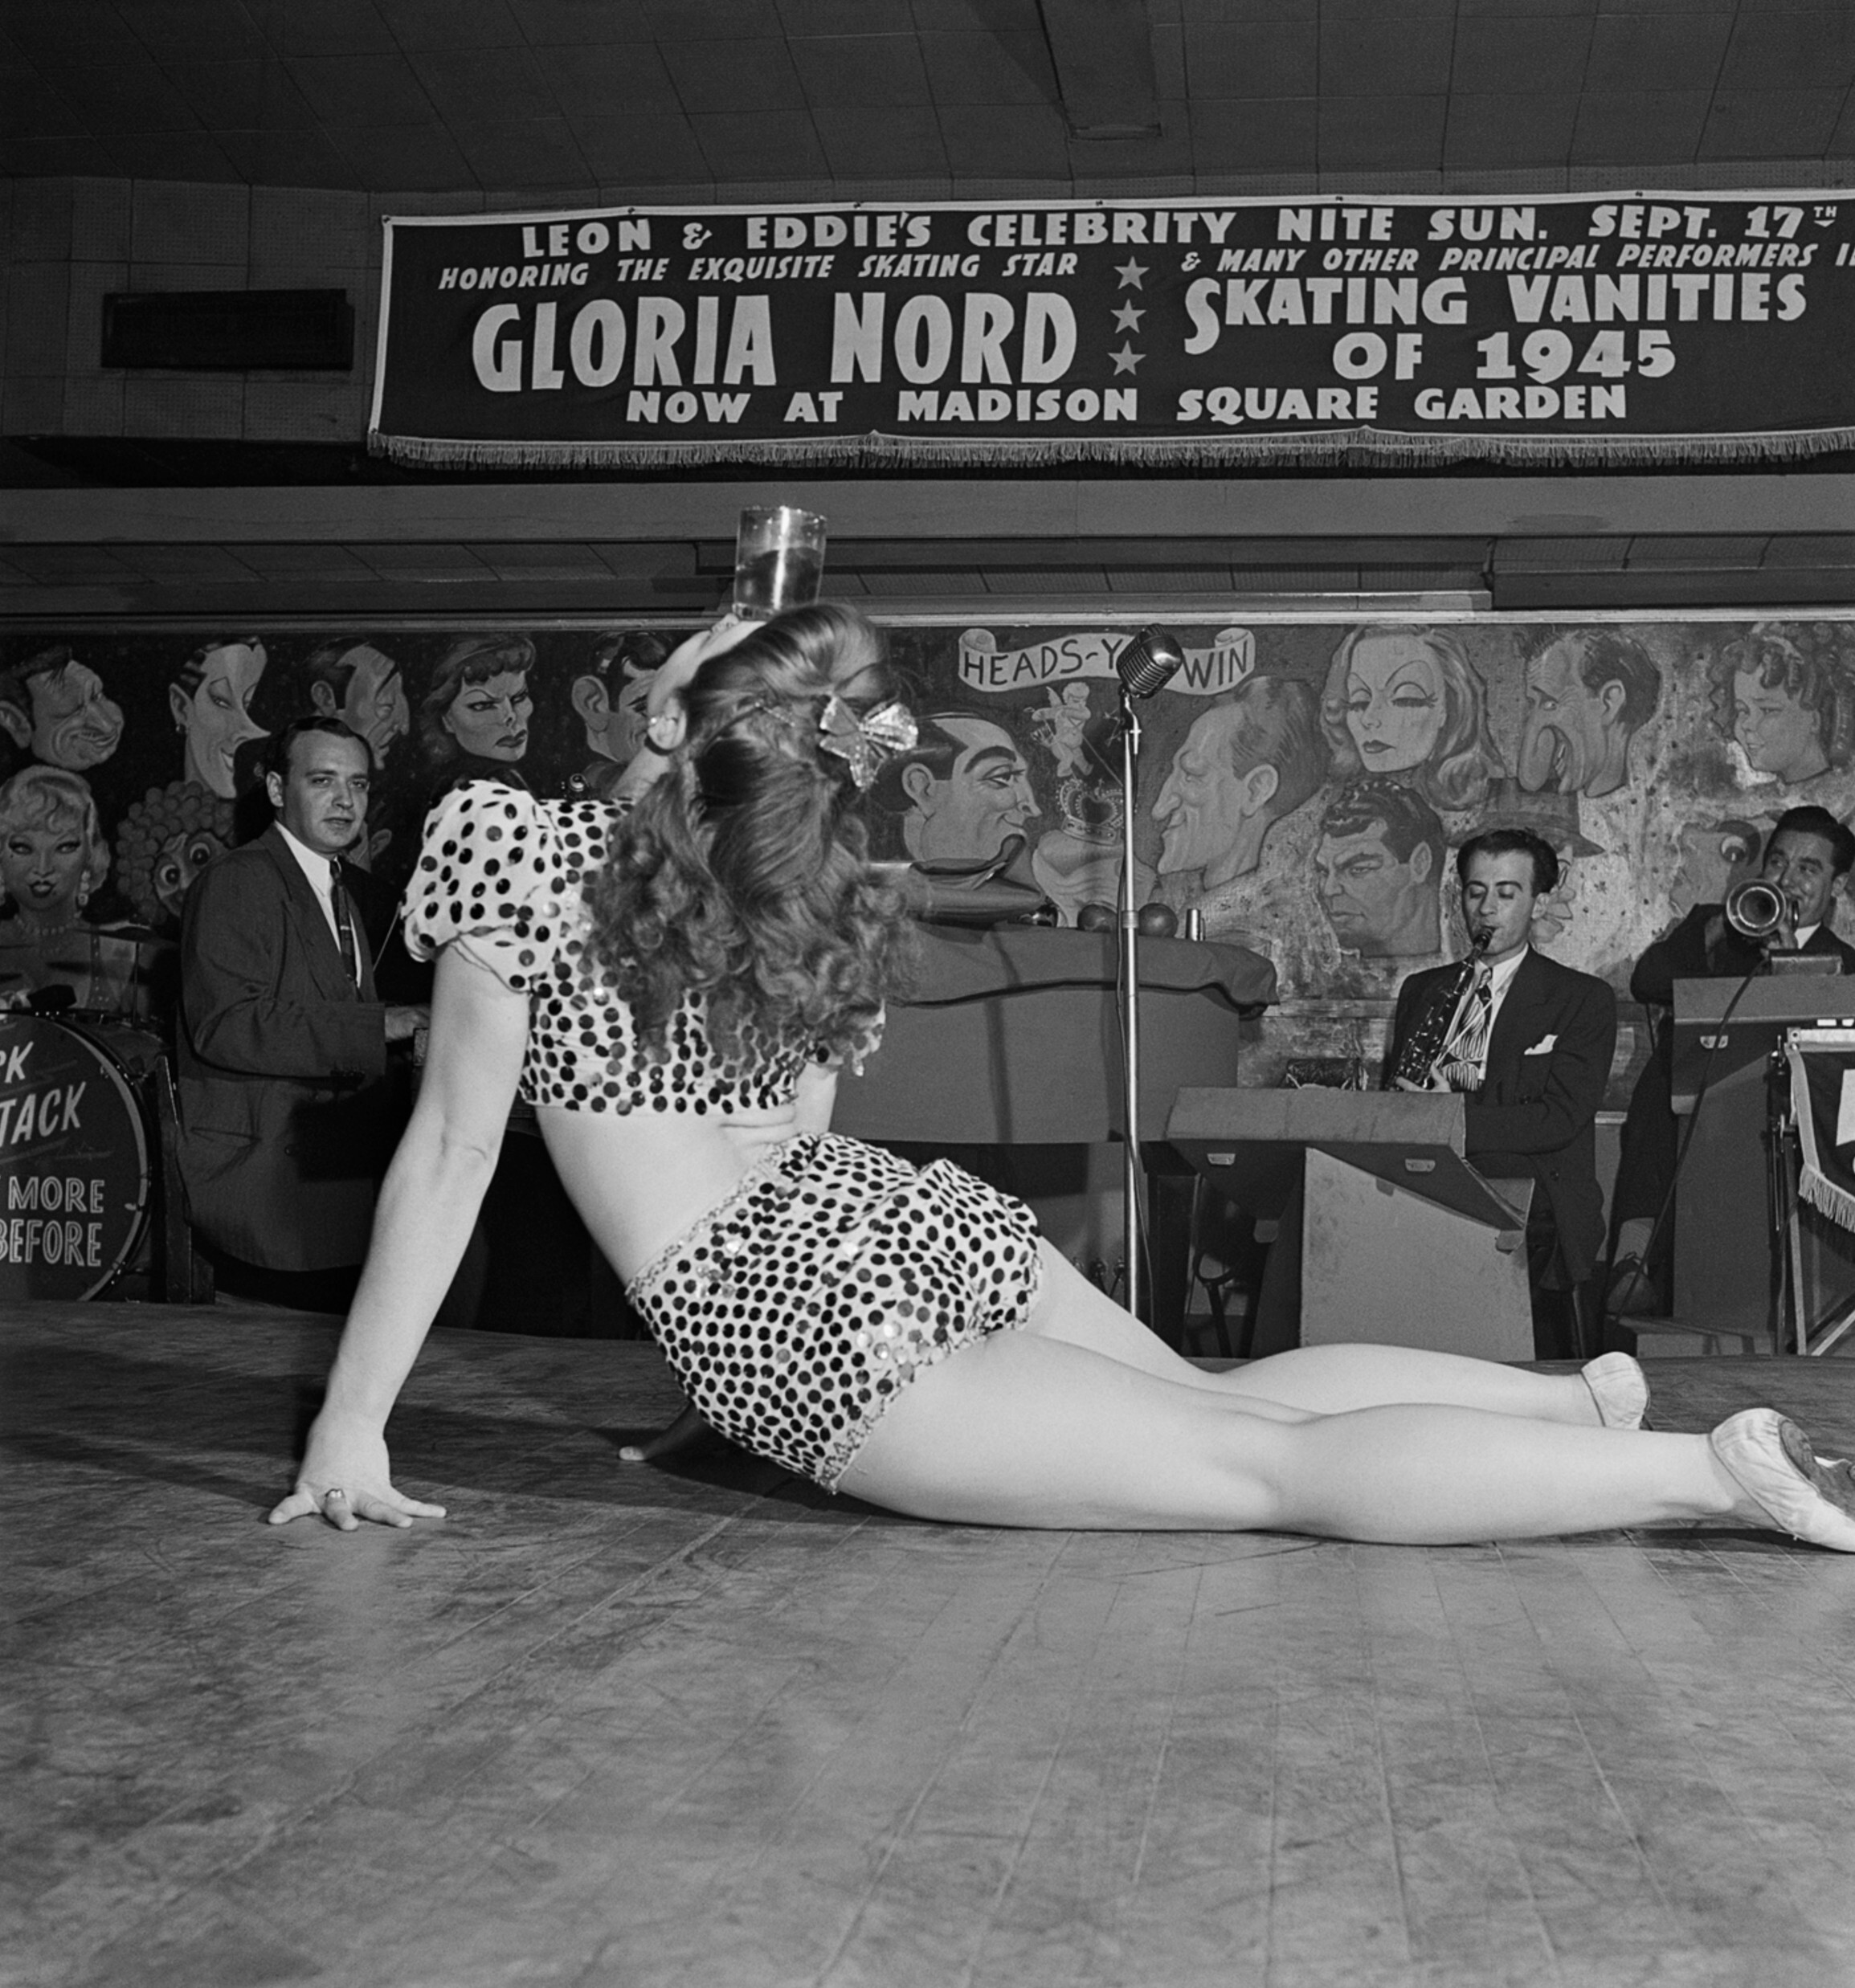 Танцовщица бурлеска развлекает военнослужащих и других посетителей, балансируя стаканом на голове, ночной клуб Леона Эдди, 52-я улица, Нью-Йорк, 1945 год. Фотограф Роман Вишняк